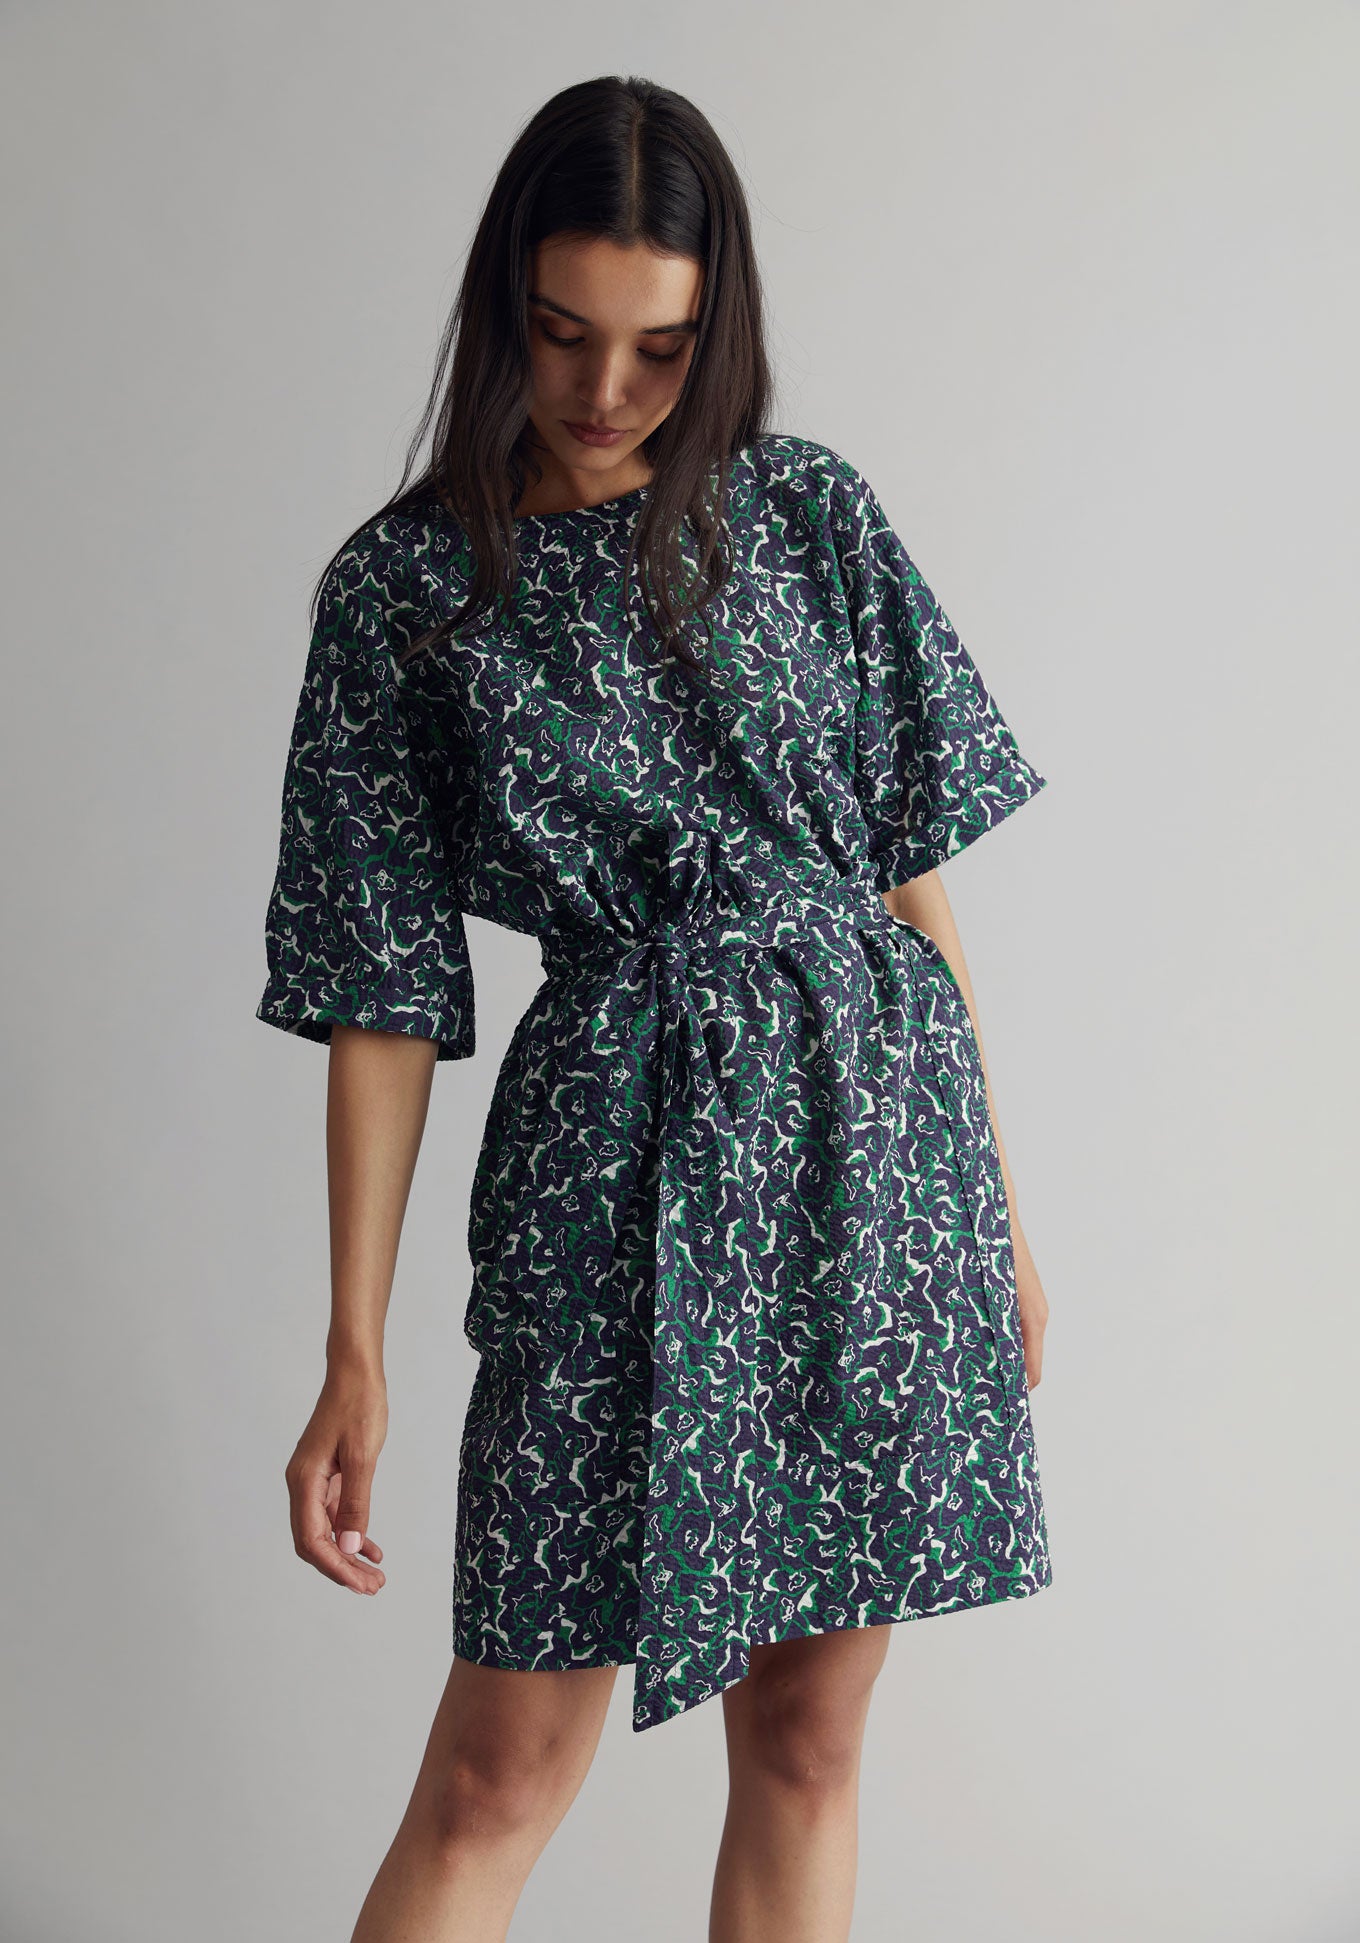 AKINA Dress - Organic Cotton Navy Print, SIZE 3 / UK 12 / EUR 40